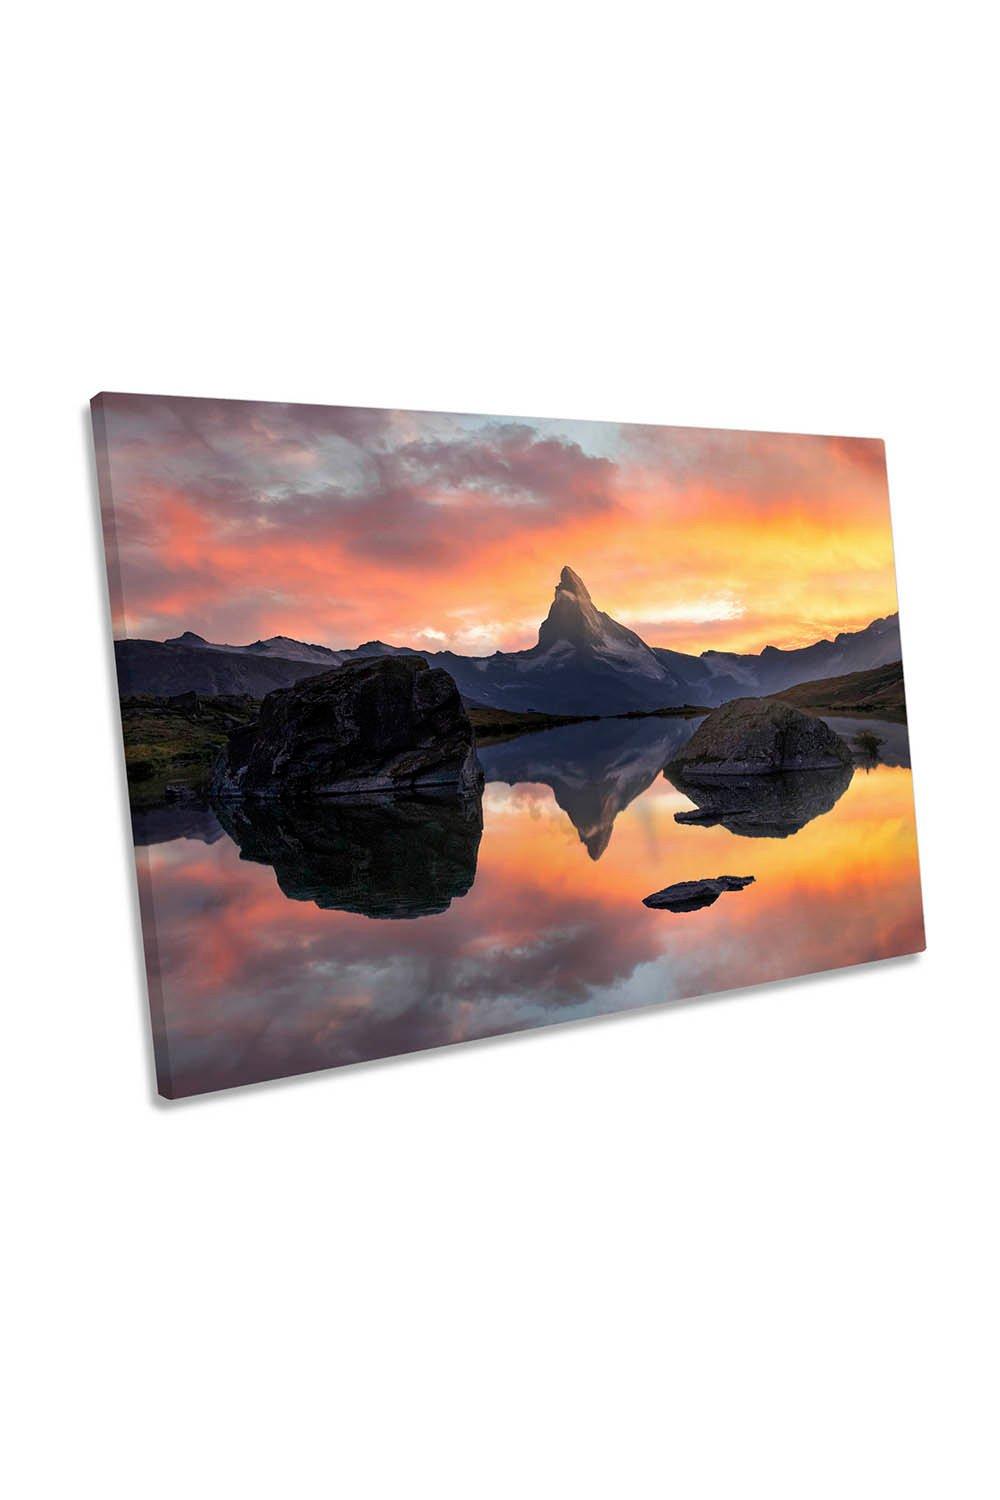 Fire Arrow Zermatt Lake Sunset Mountains Canvas Wall Art Picture Print